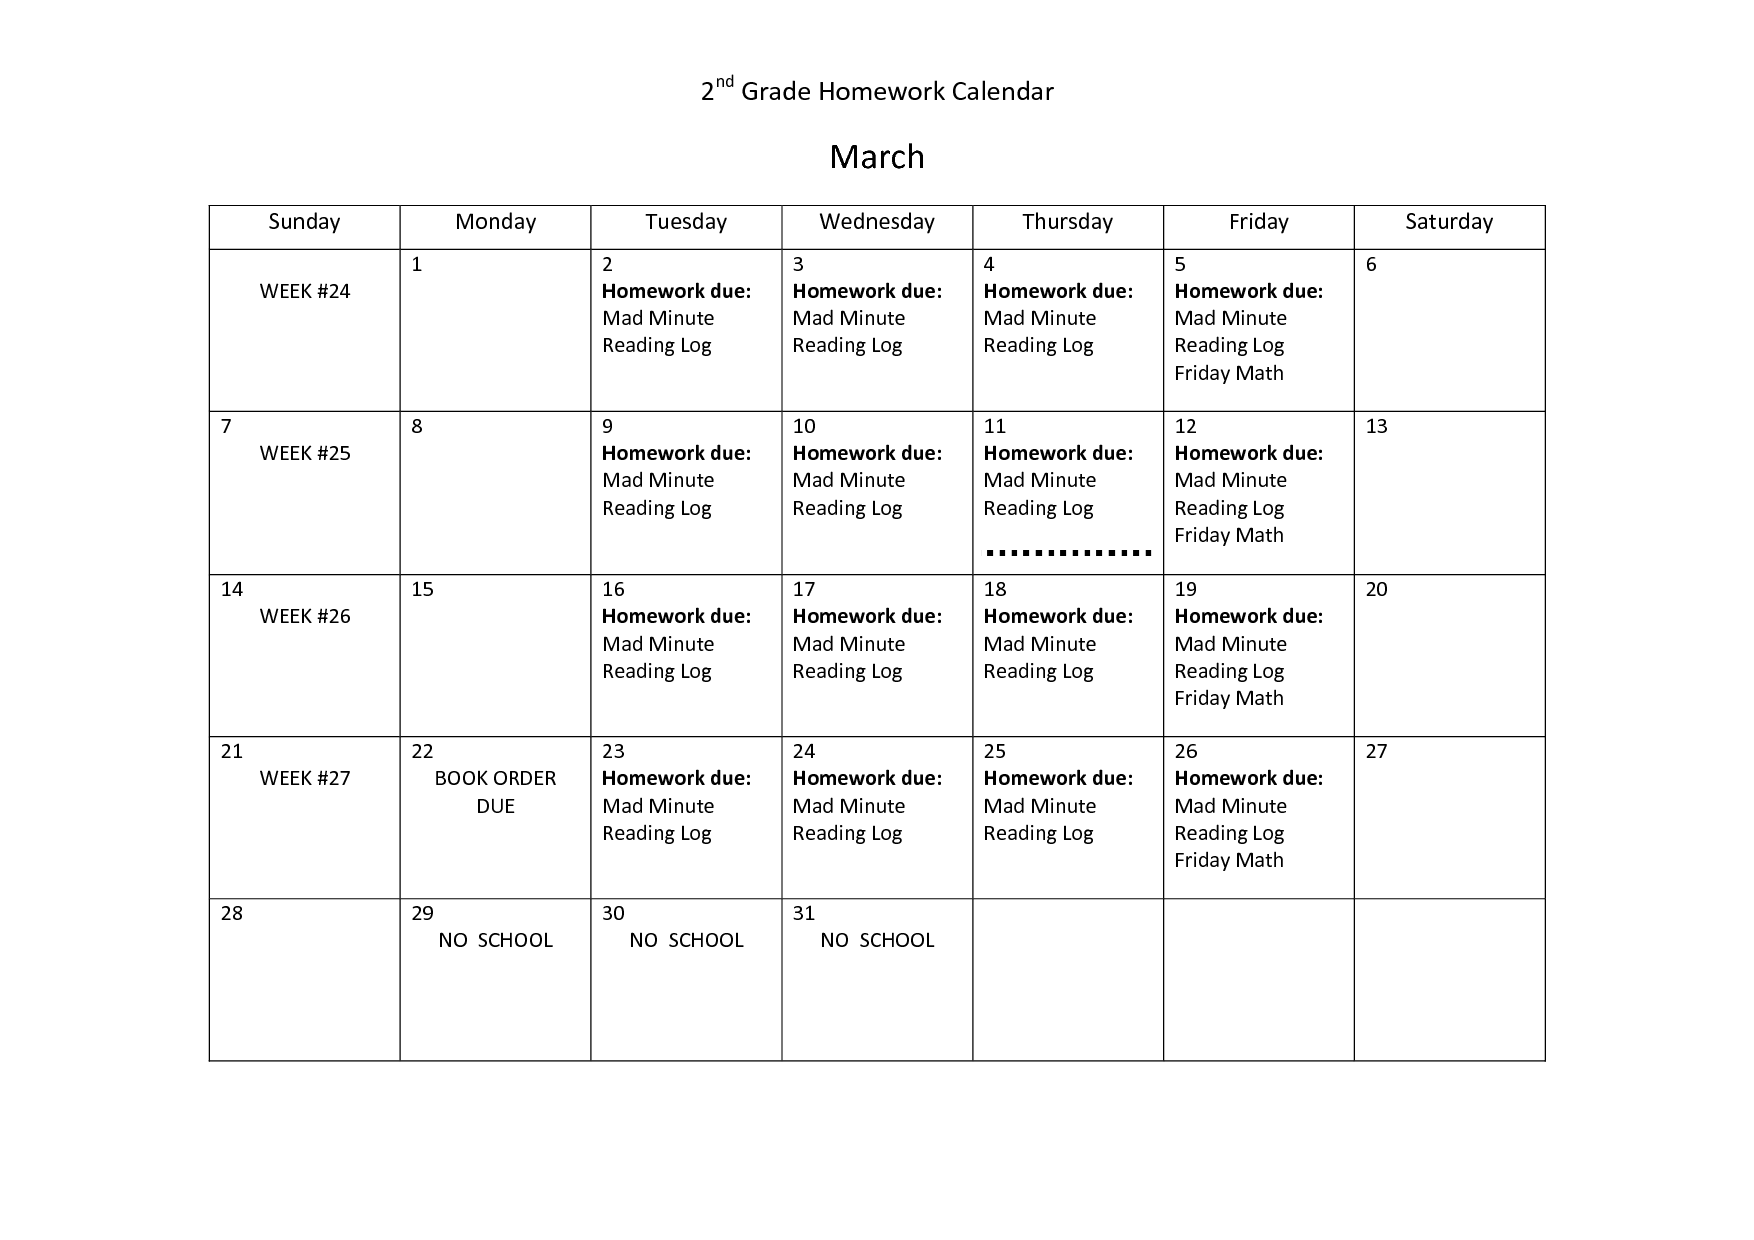 2nd Grade Homework Calendar Template Image